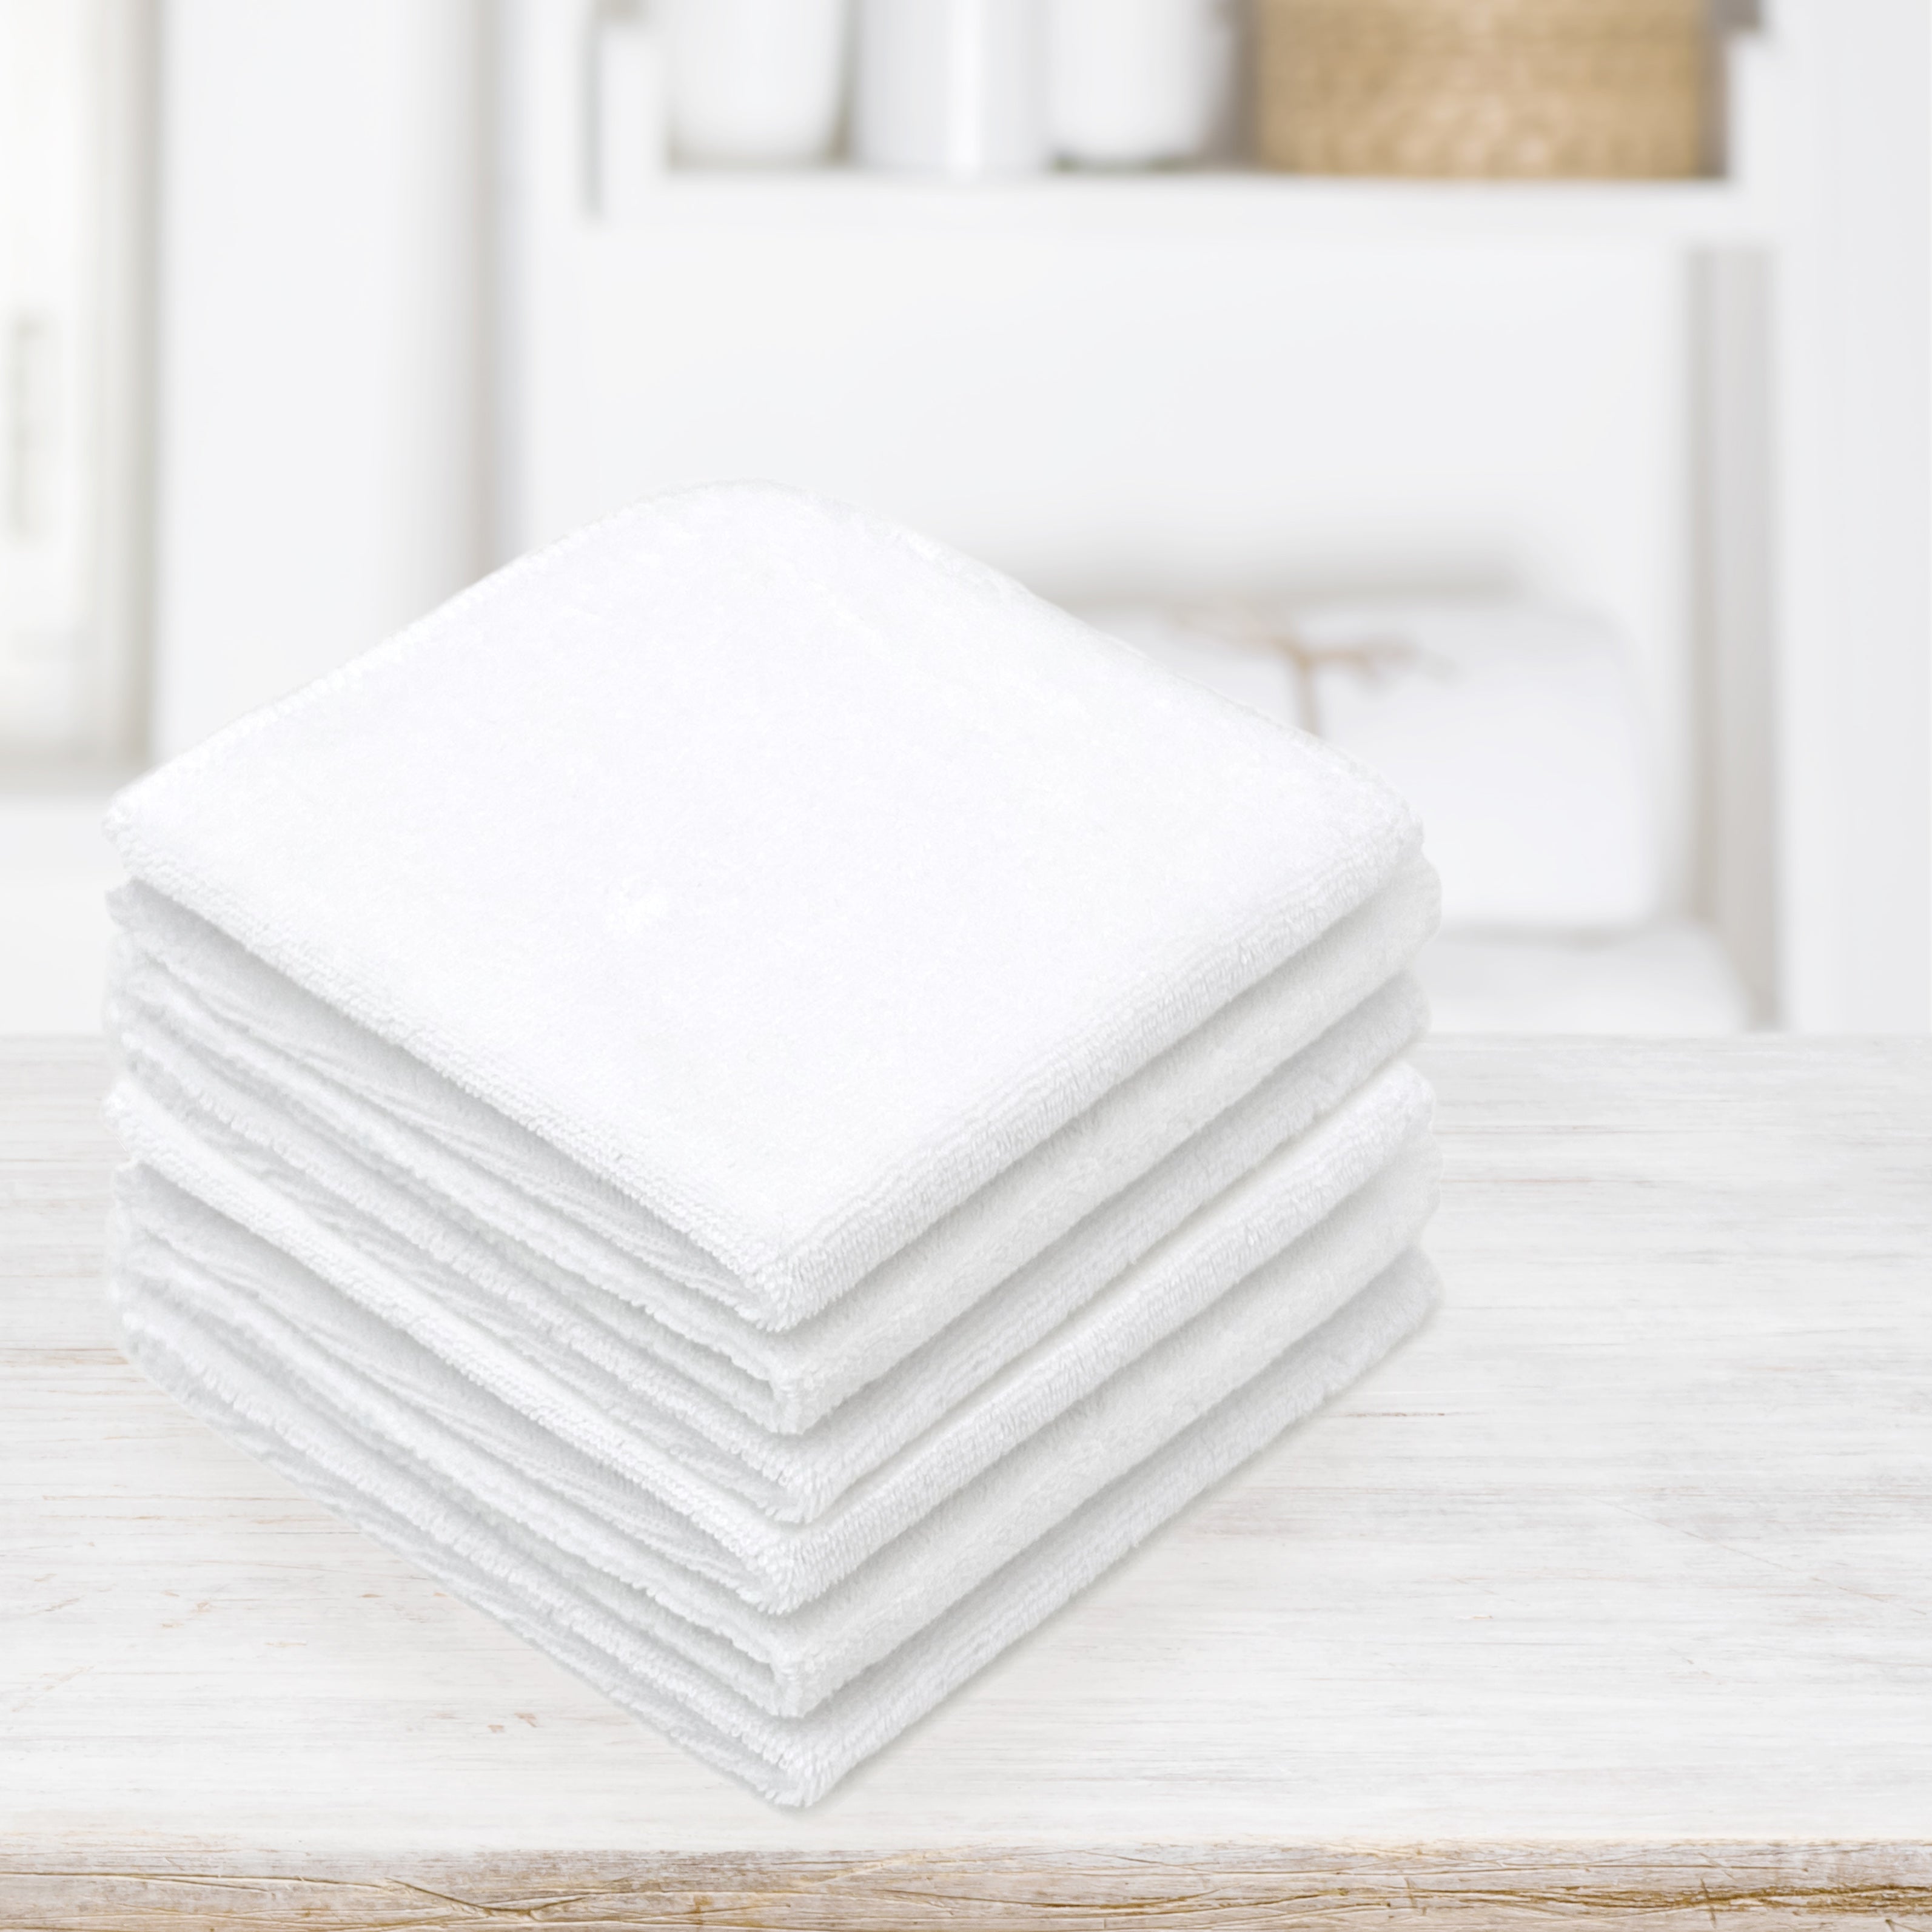 Morgan 6pc Washcloth Set | White | One Size | Bath Towels Washcloths